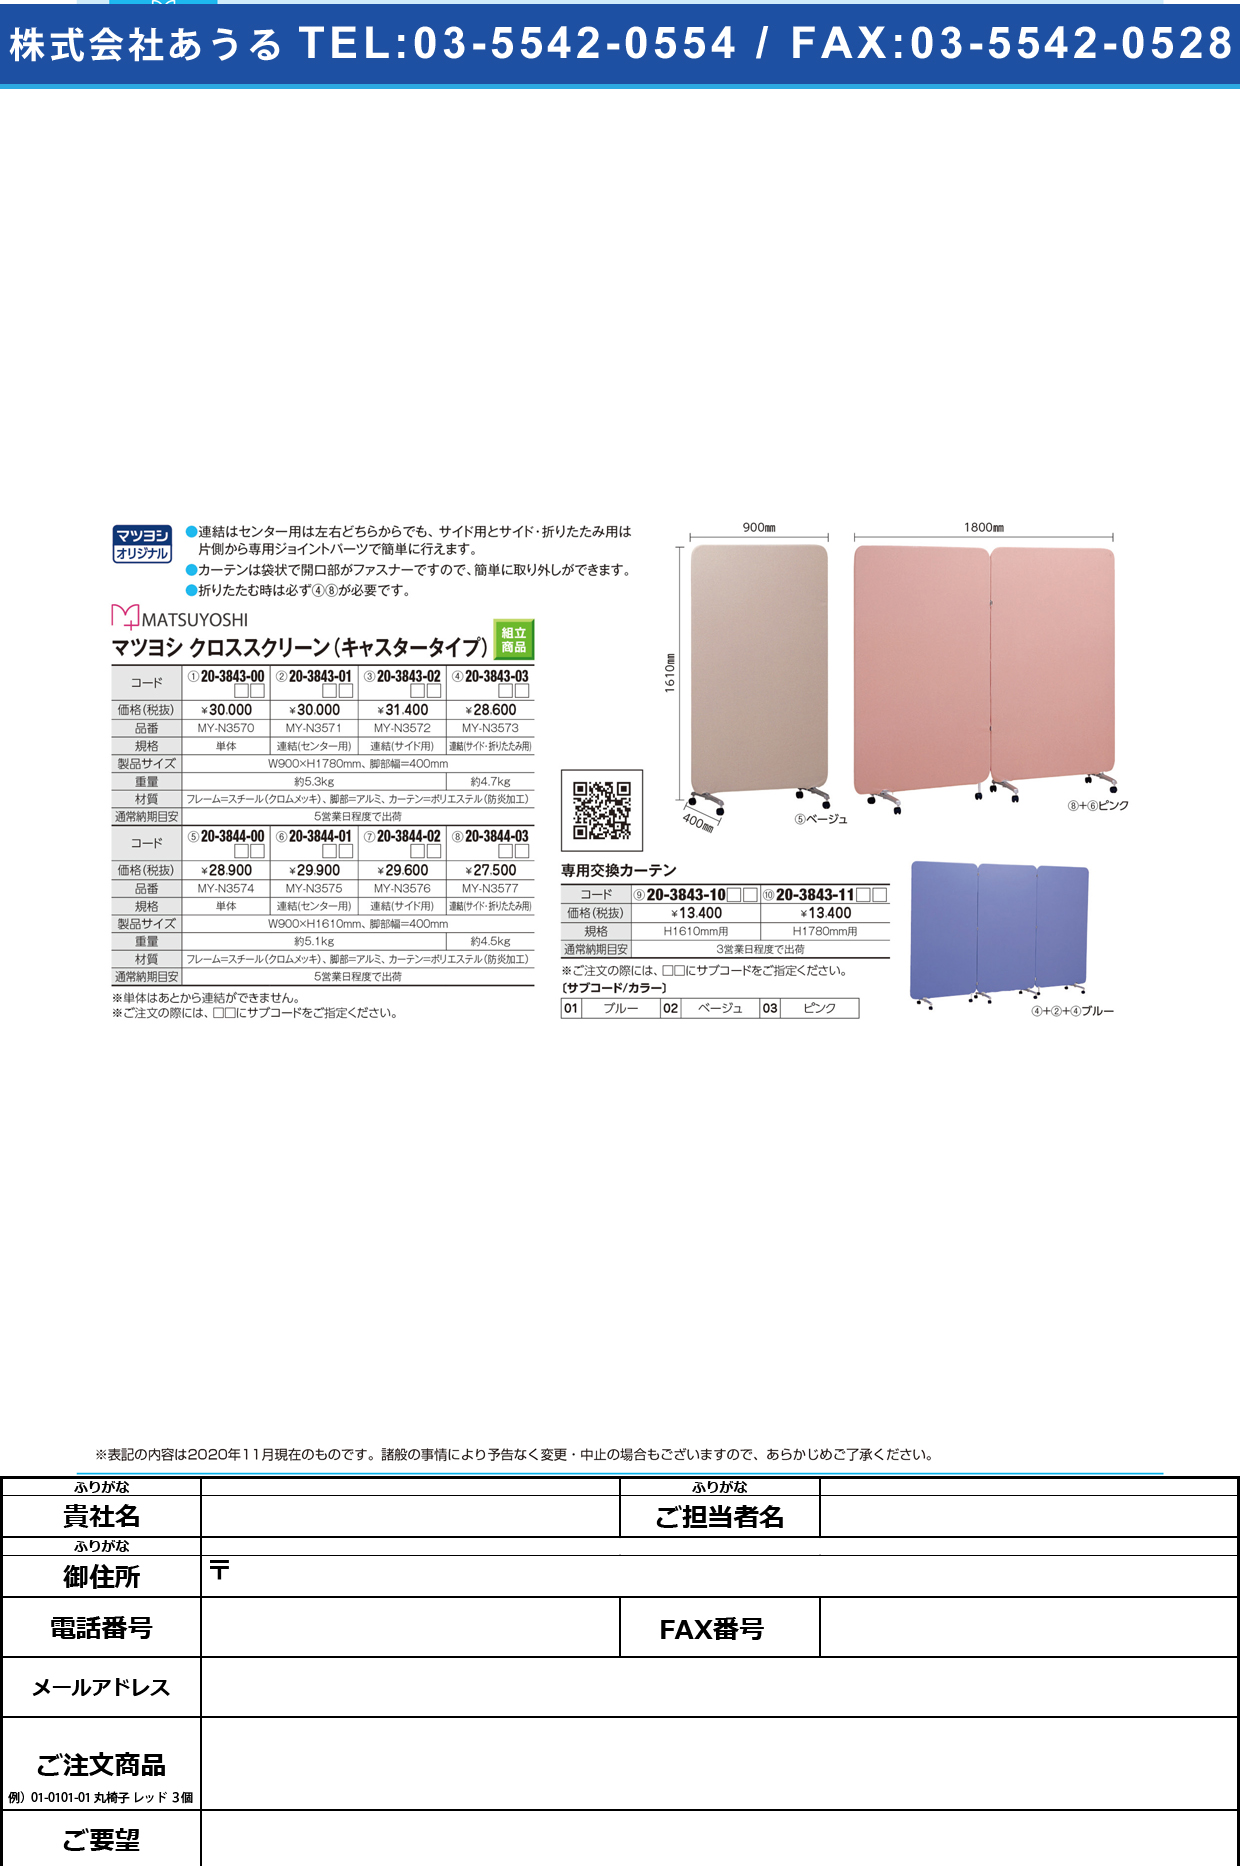 マイスコクロススクリーン用カーテン H1610MMヨウH1610MMﾖｳブルー(20-3843-10-01)【松吉医科器械】(販売単位:1)